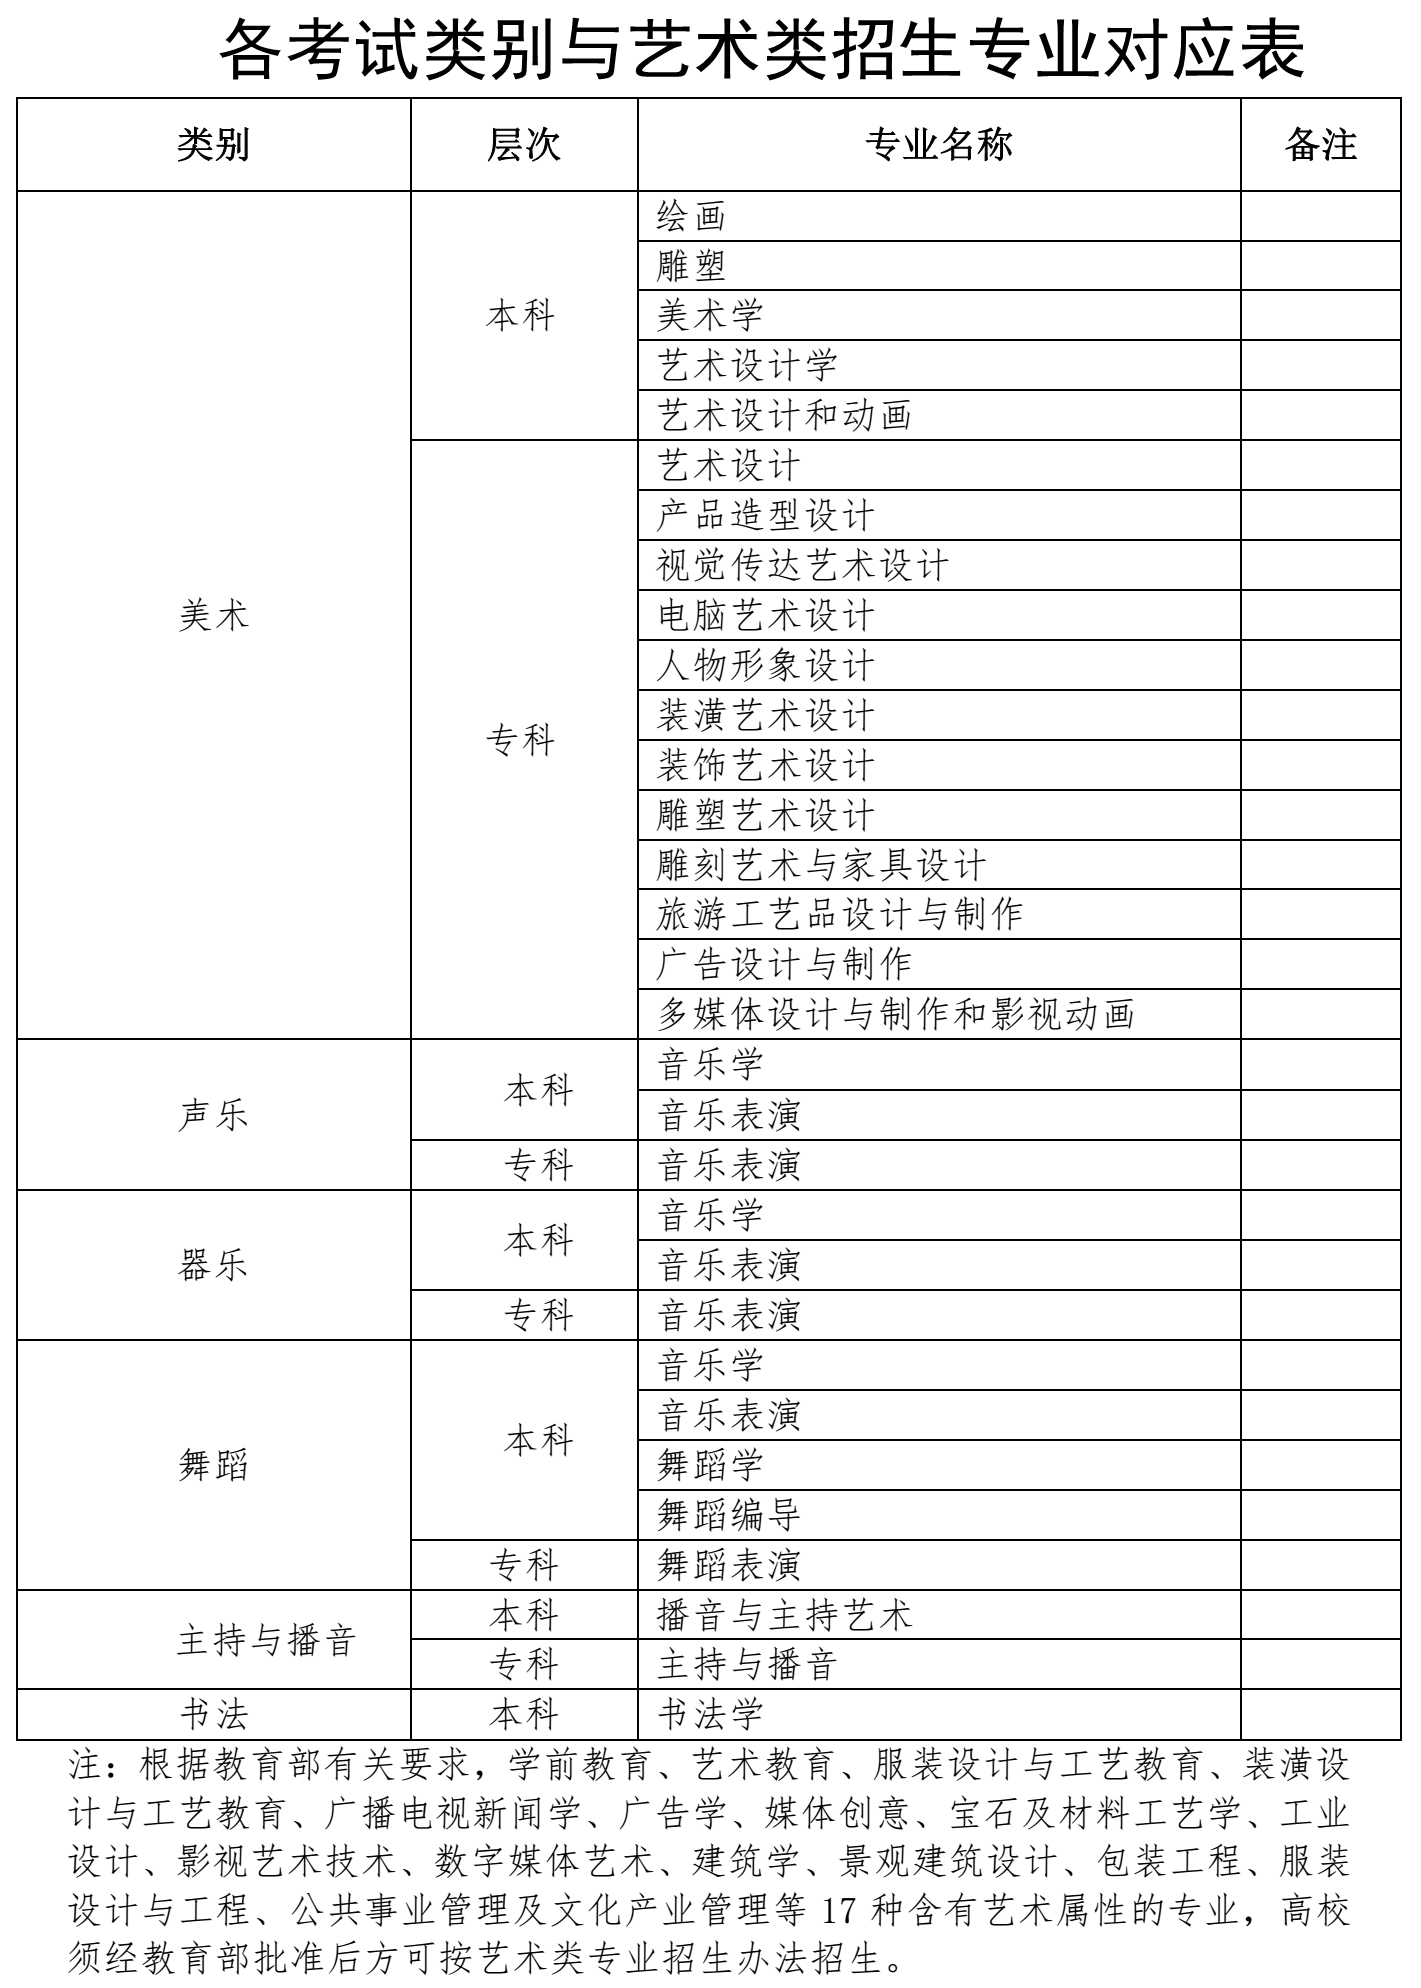 海南省考试局关于做好2022年海南省普通高等学校招生艺术类专业考试工作的通知